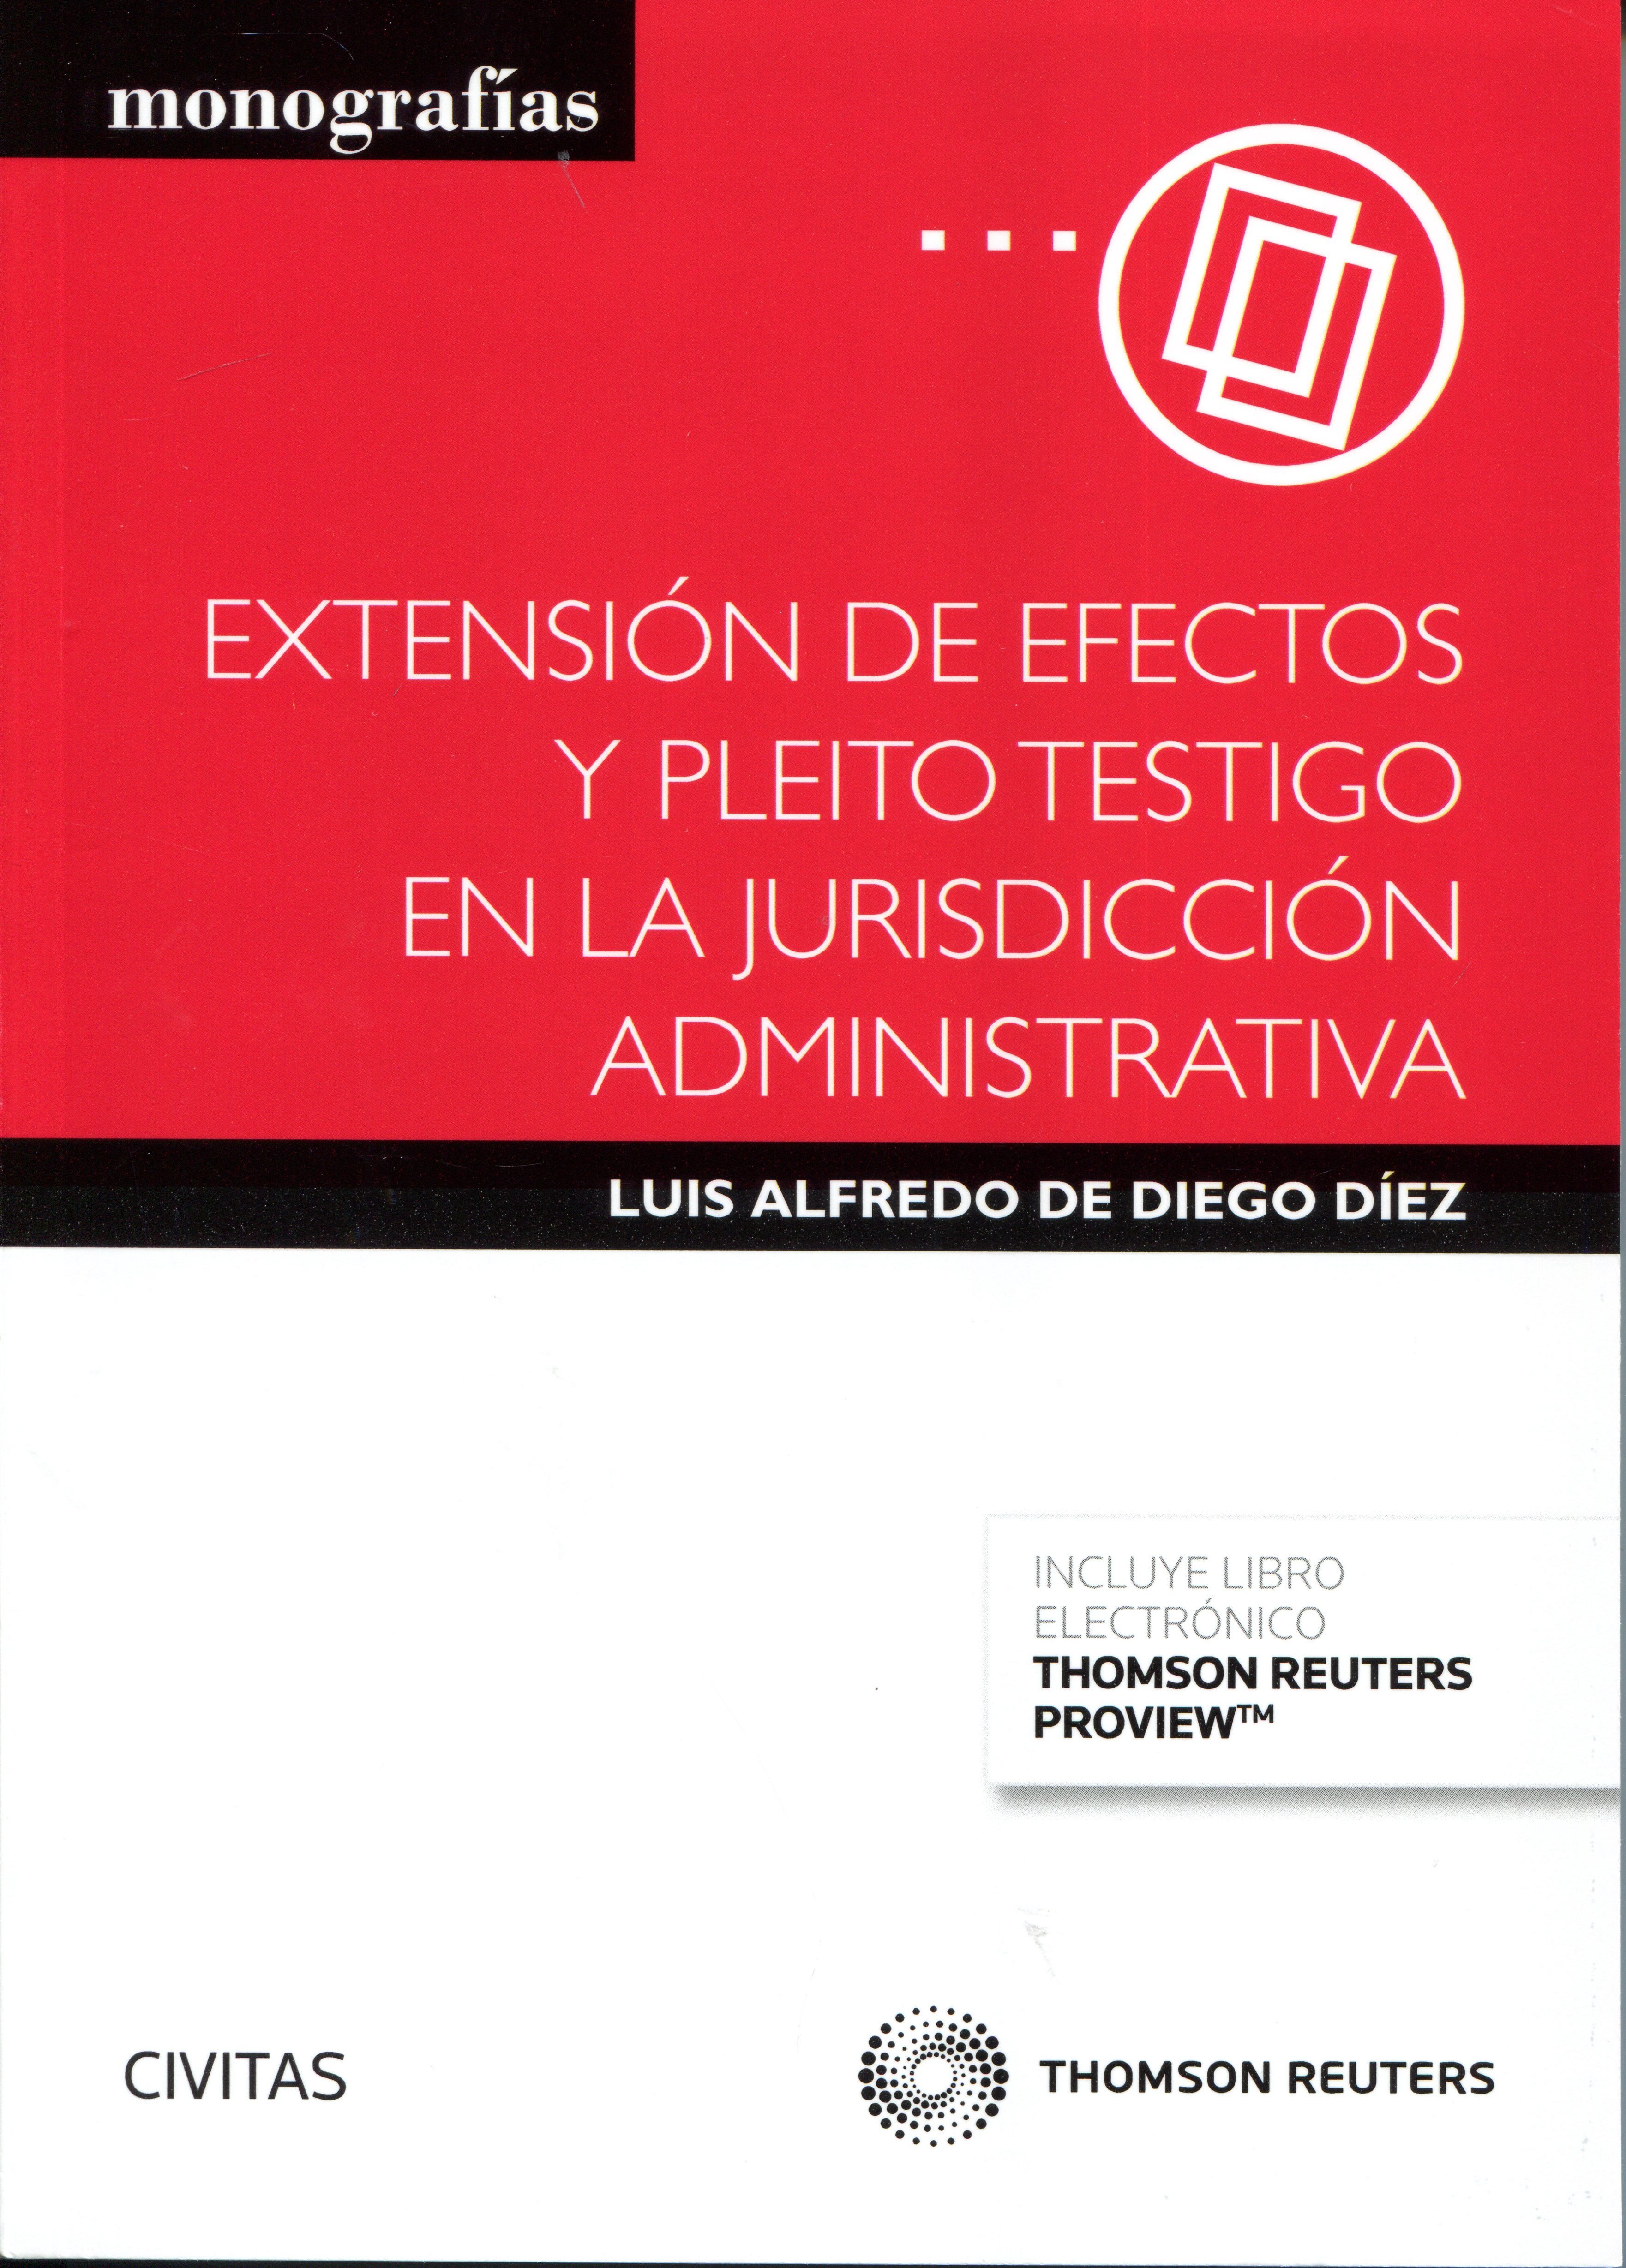 Extensión de efectos y pleito testigo en la jurisdicción administrativa